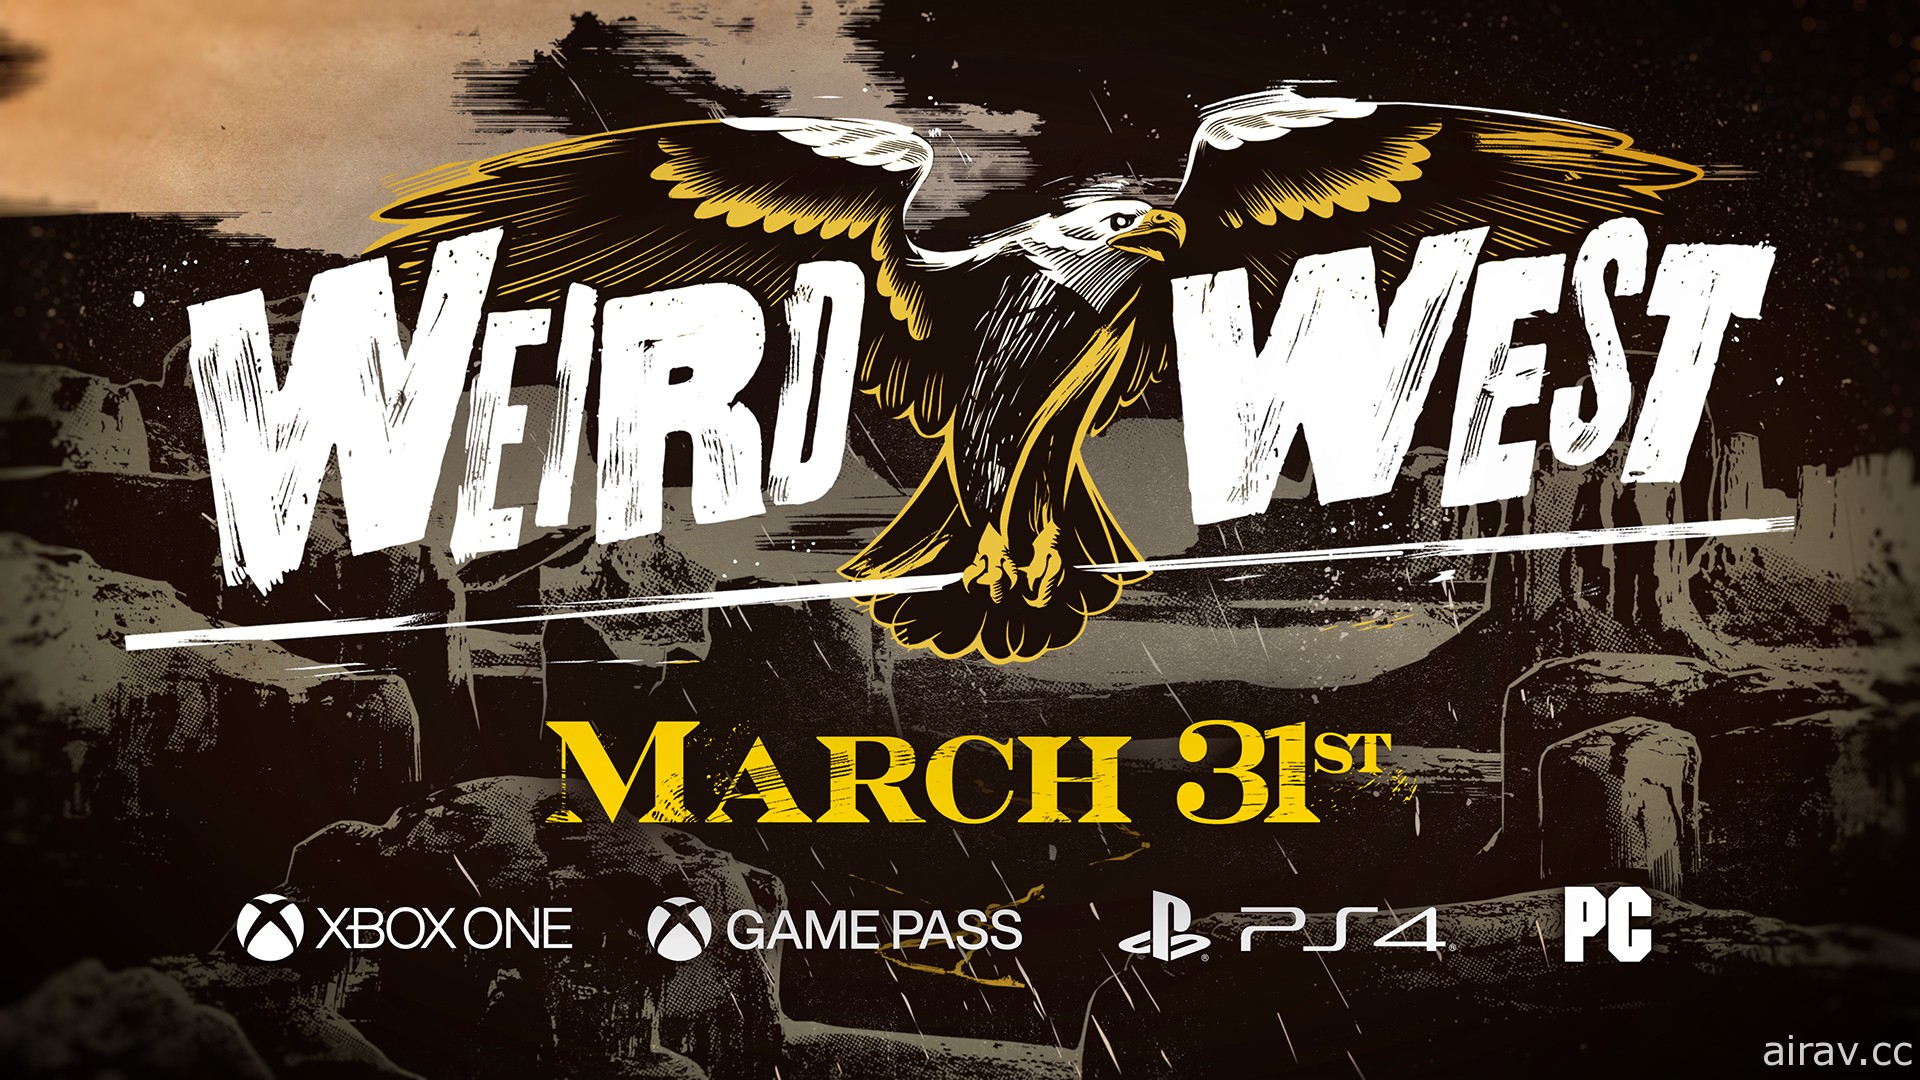 沉浸式體驗動作 RPG《詭野西部 Weird West》延至明年 3/31 發行